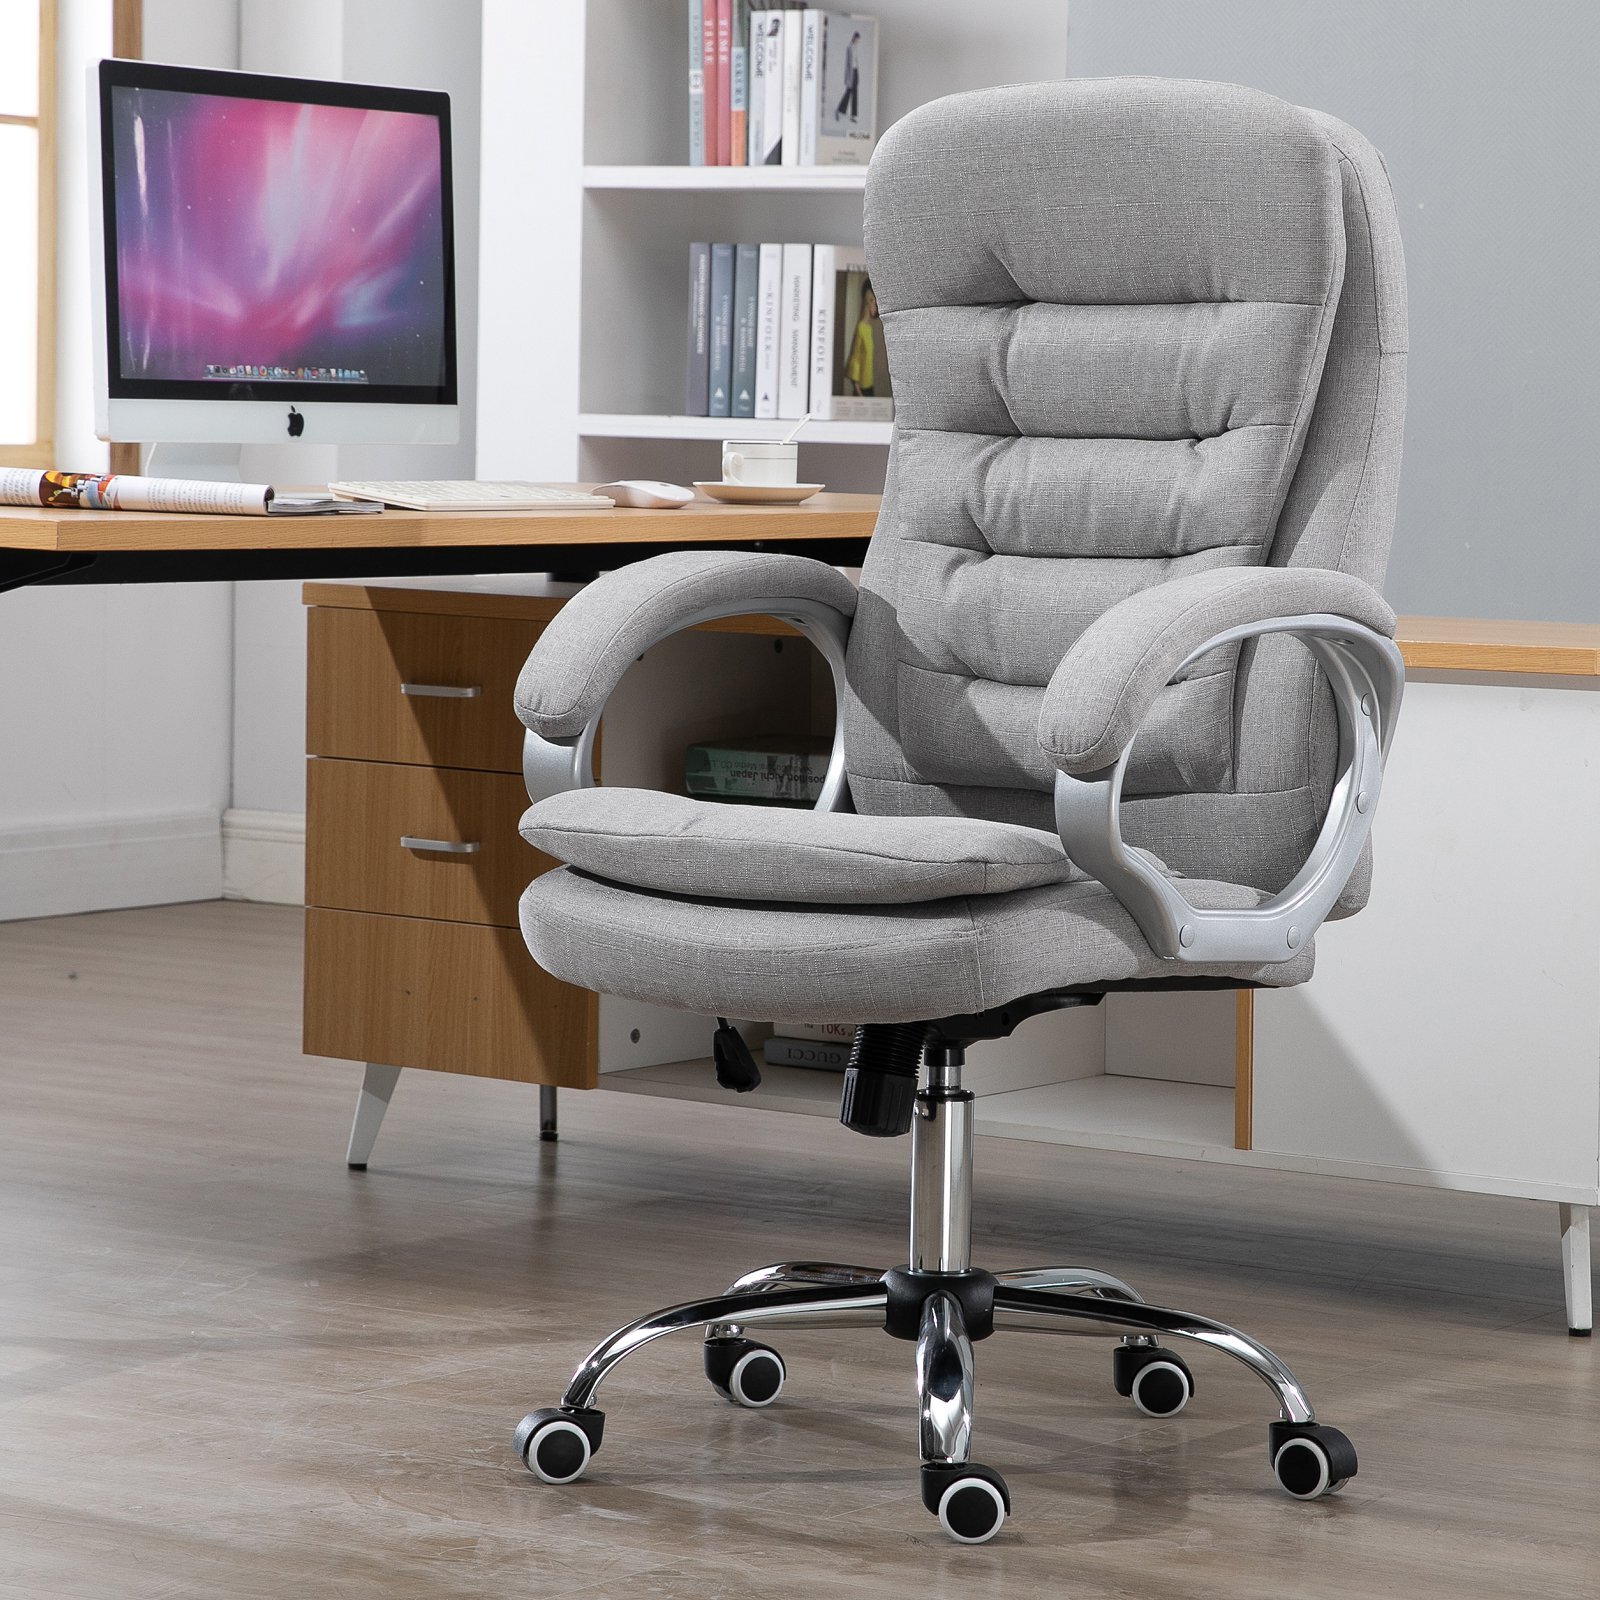 https://assets.wfcdn.com/im/06638564/compr-r85/9790/97904210/shamavi-linen-executive-chair-with-headrest.jpg